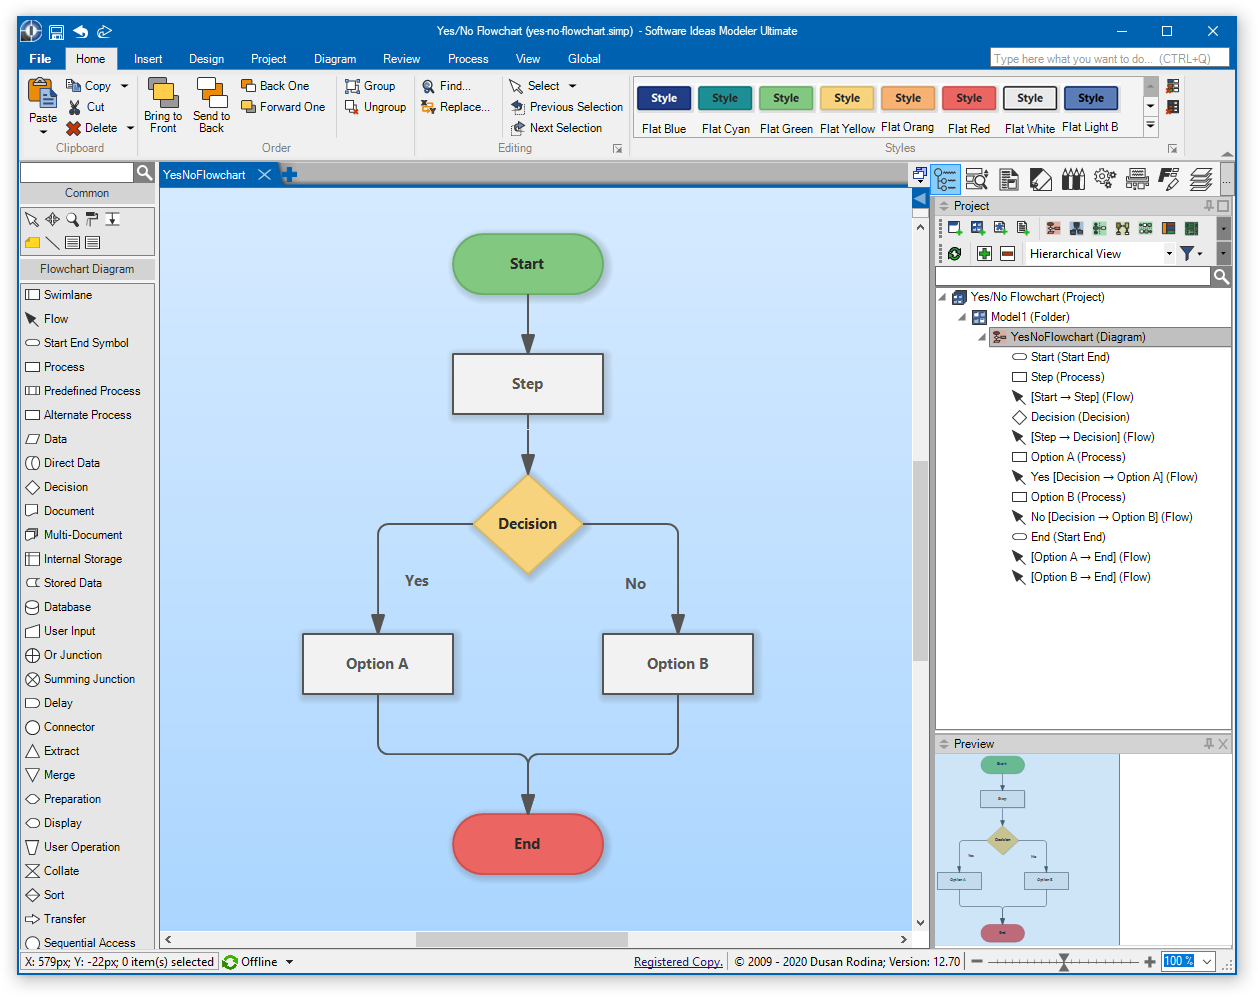 Flowchart editing in Software Ideas Modeler